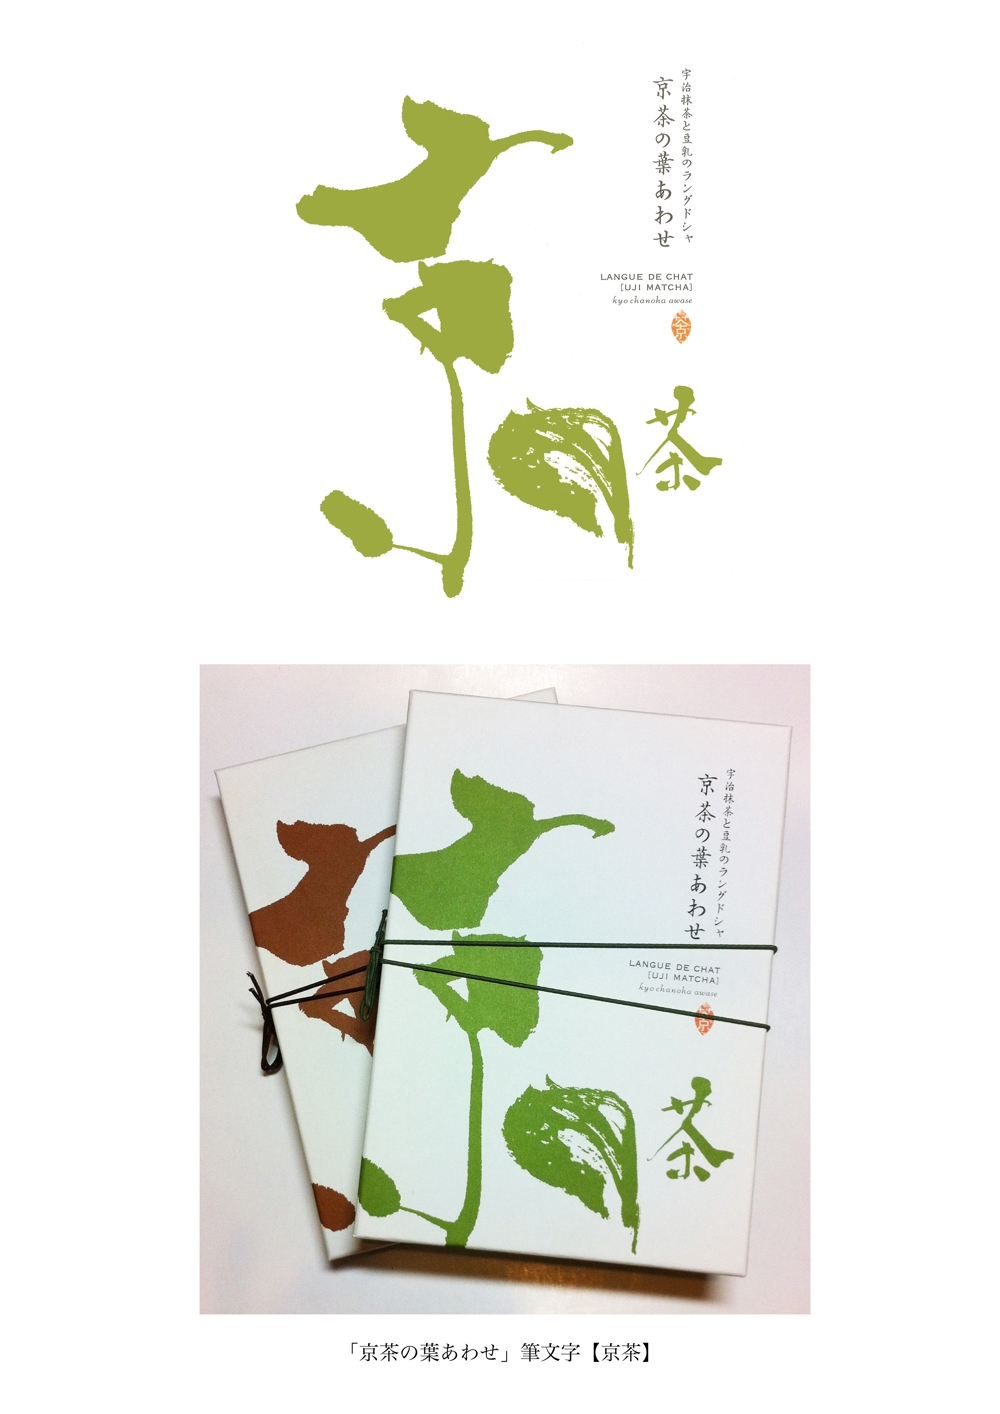 京茶の葉あわせ”京茶”部分のロゴ作成